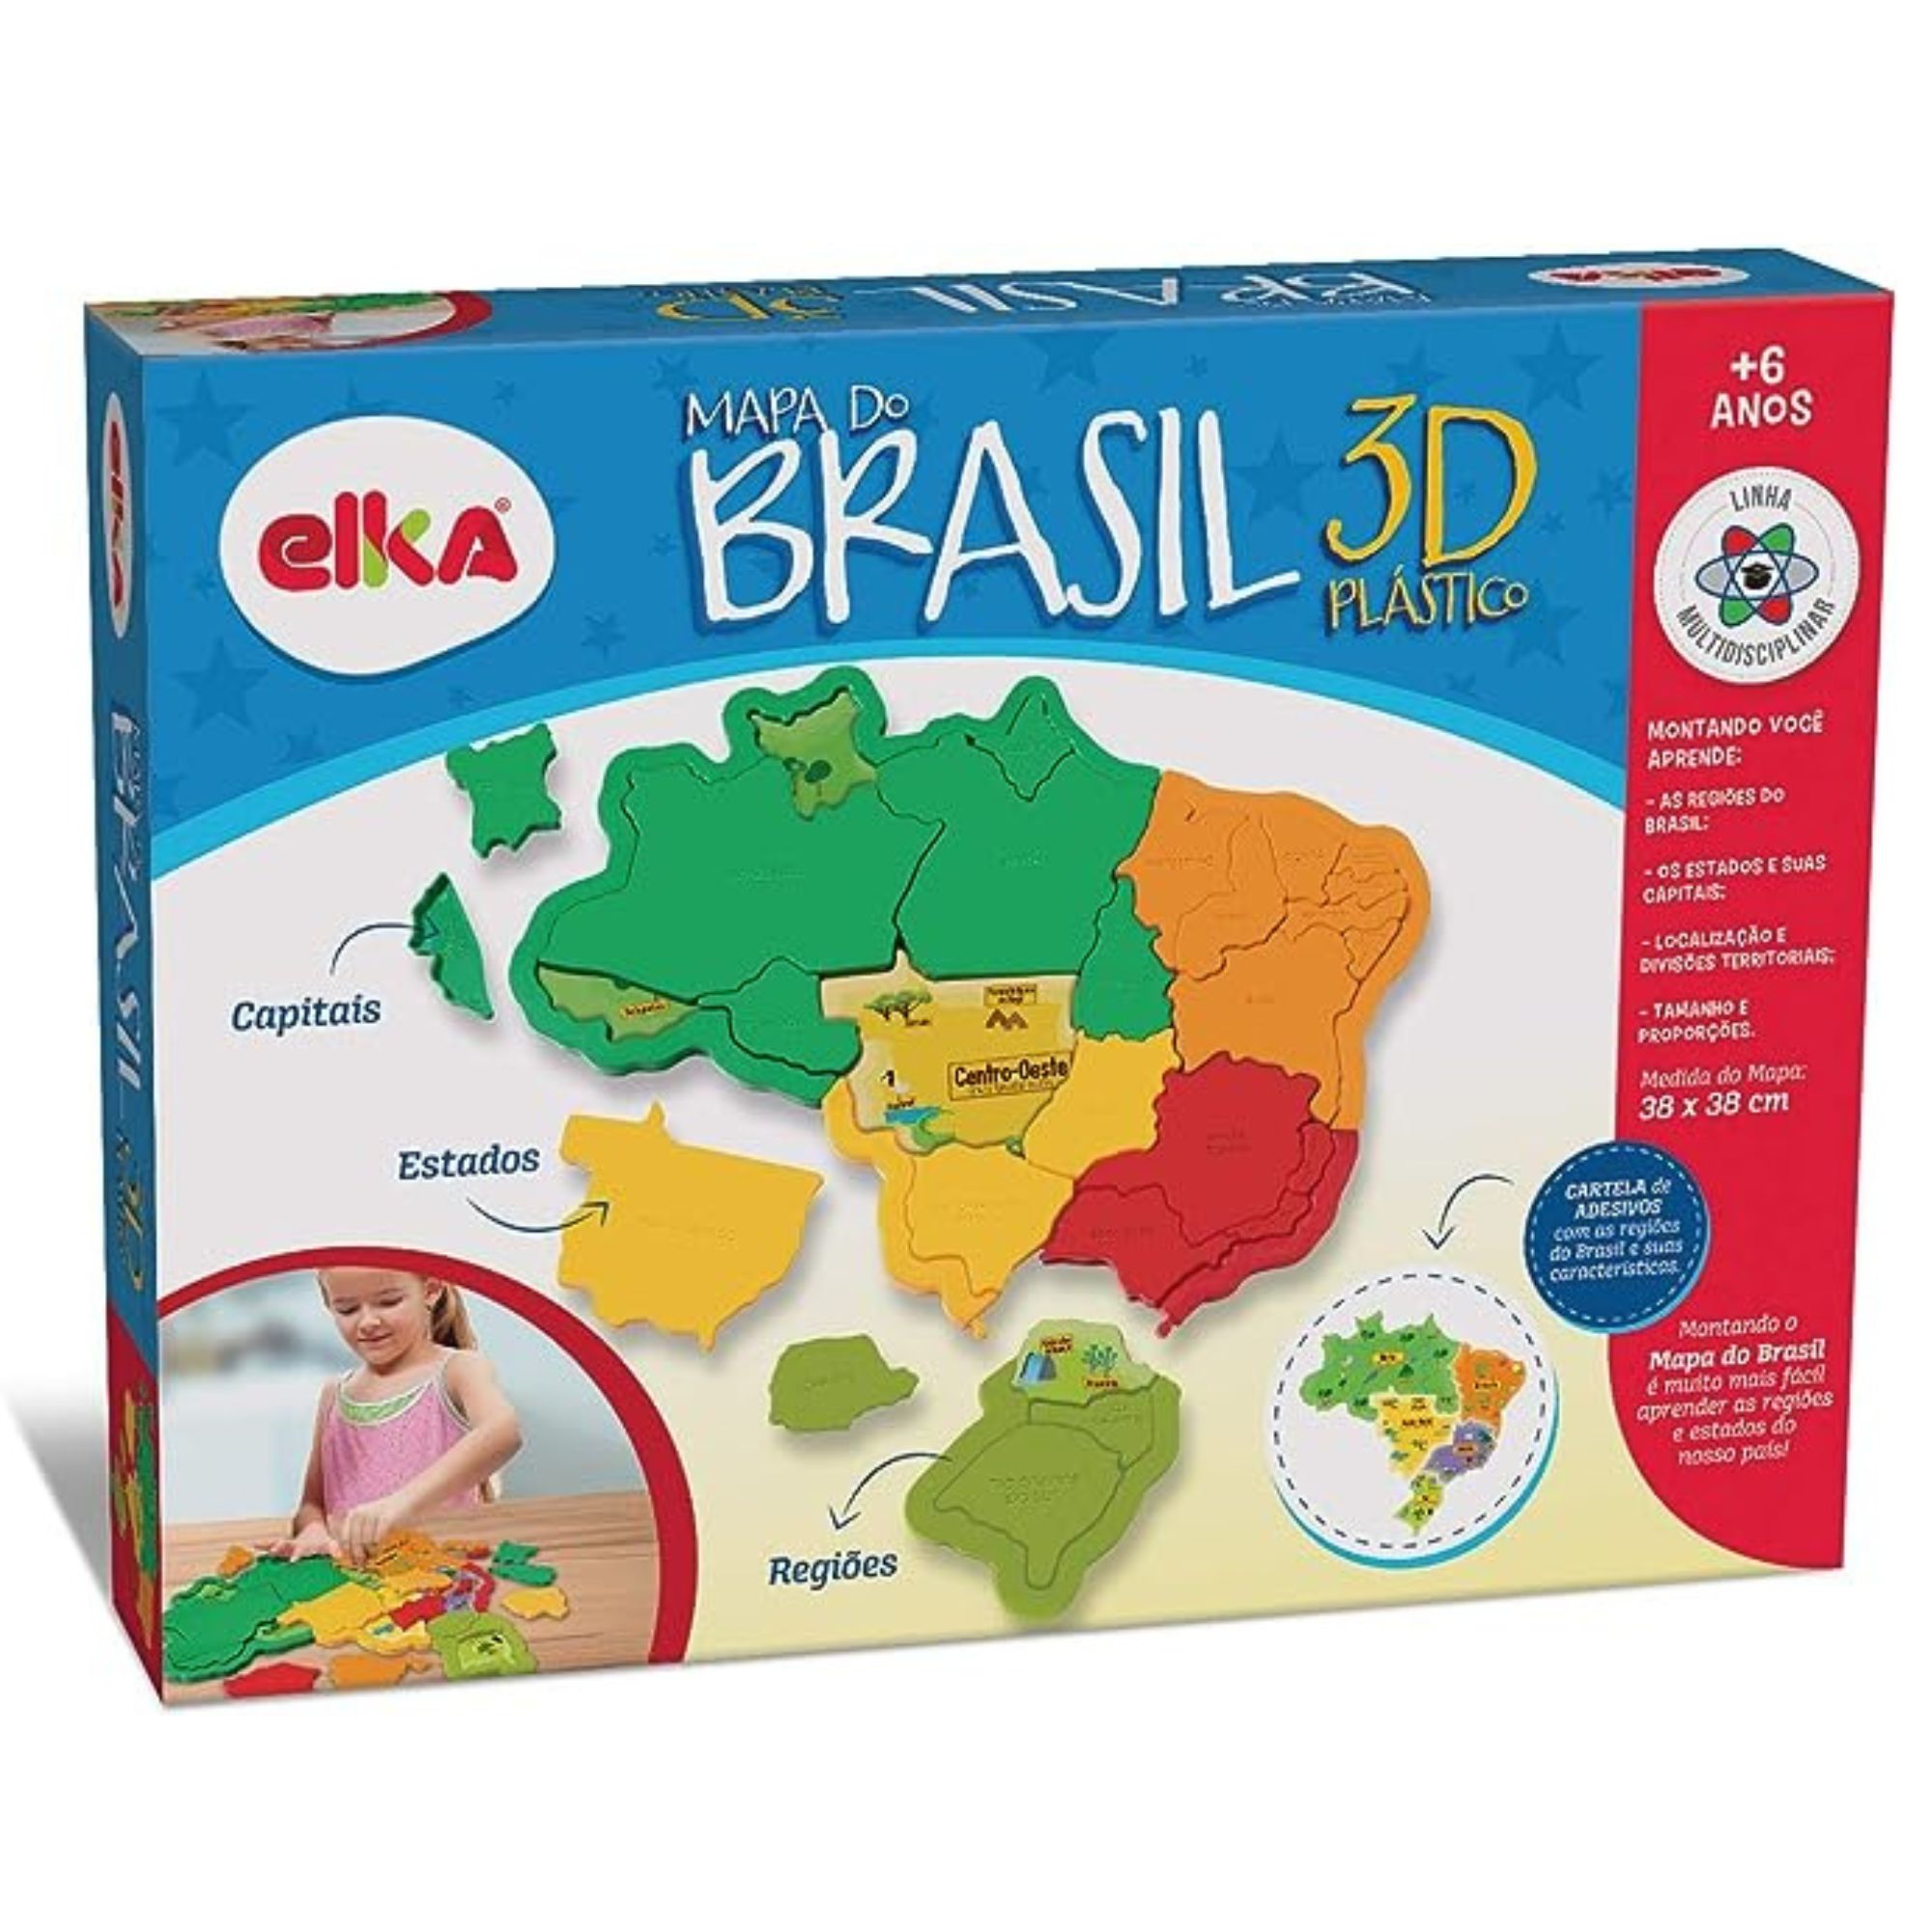 Mapa do Brasil 3D Plastico